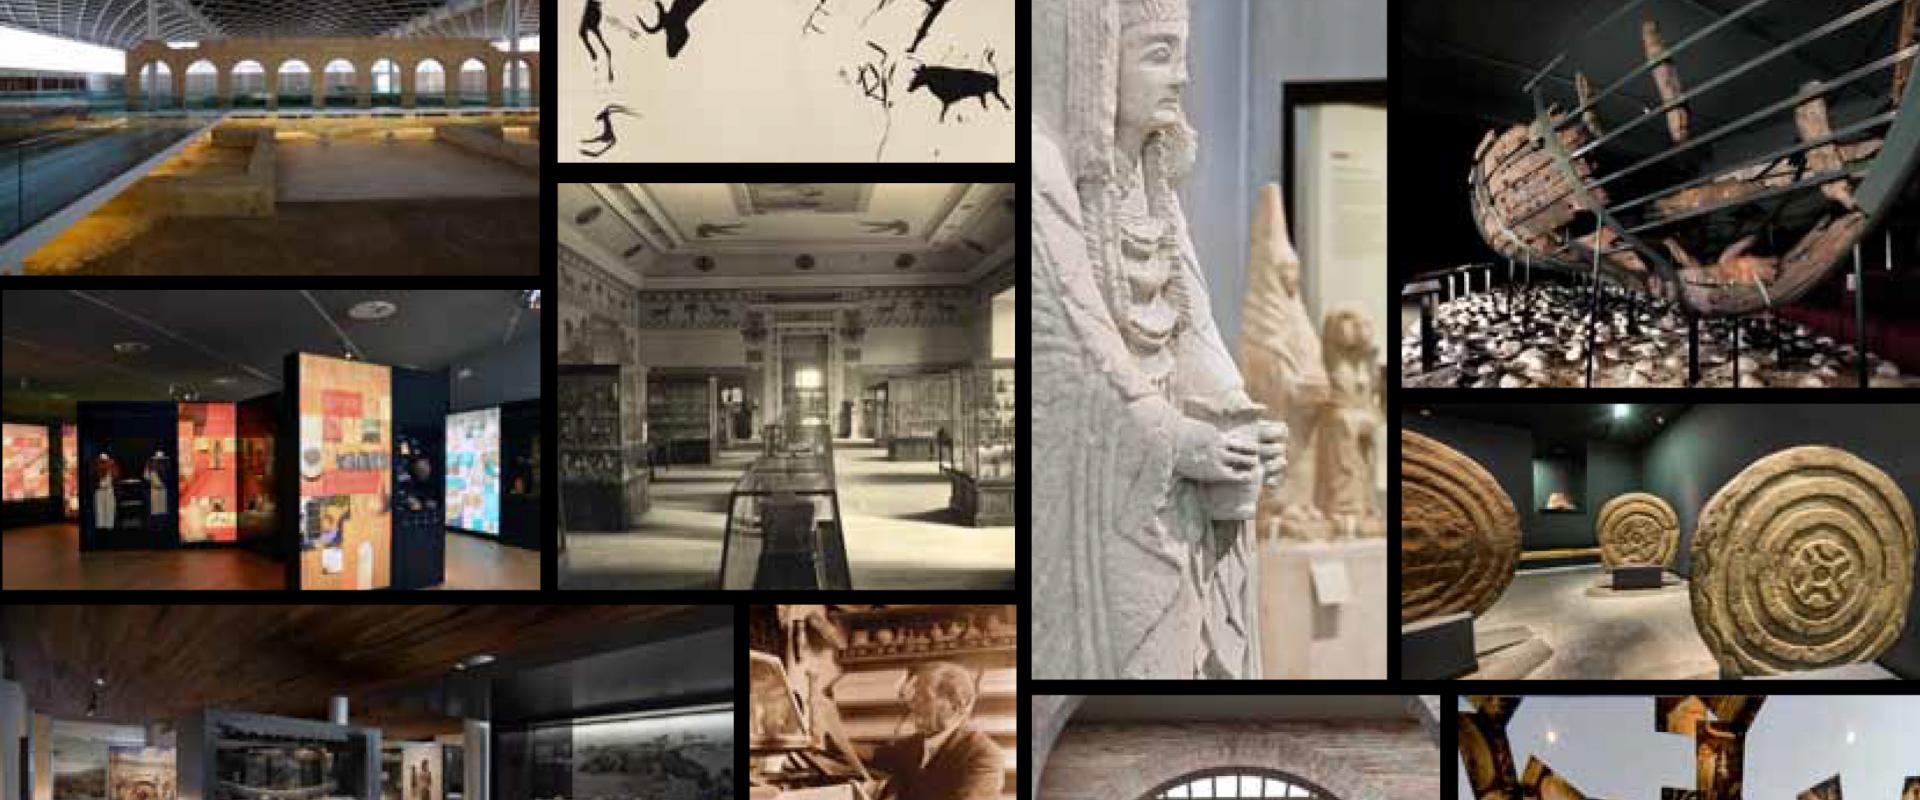 Le Musée Archéologique National d'Espagne comprend La Olmeda et son musée dans son bulletin spécial